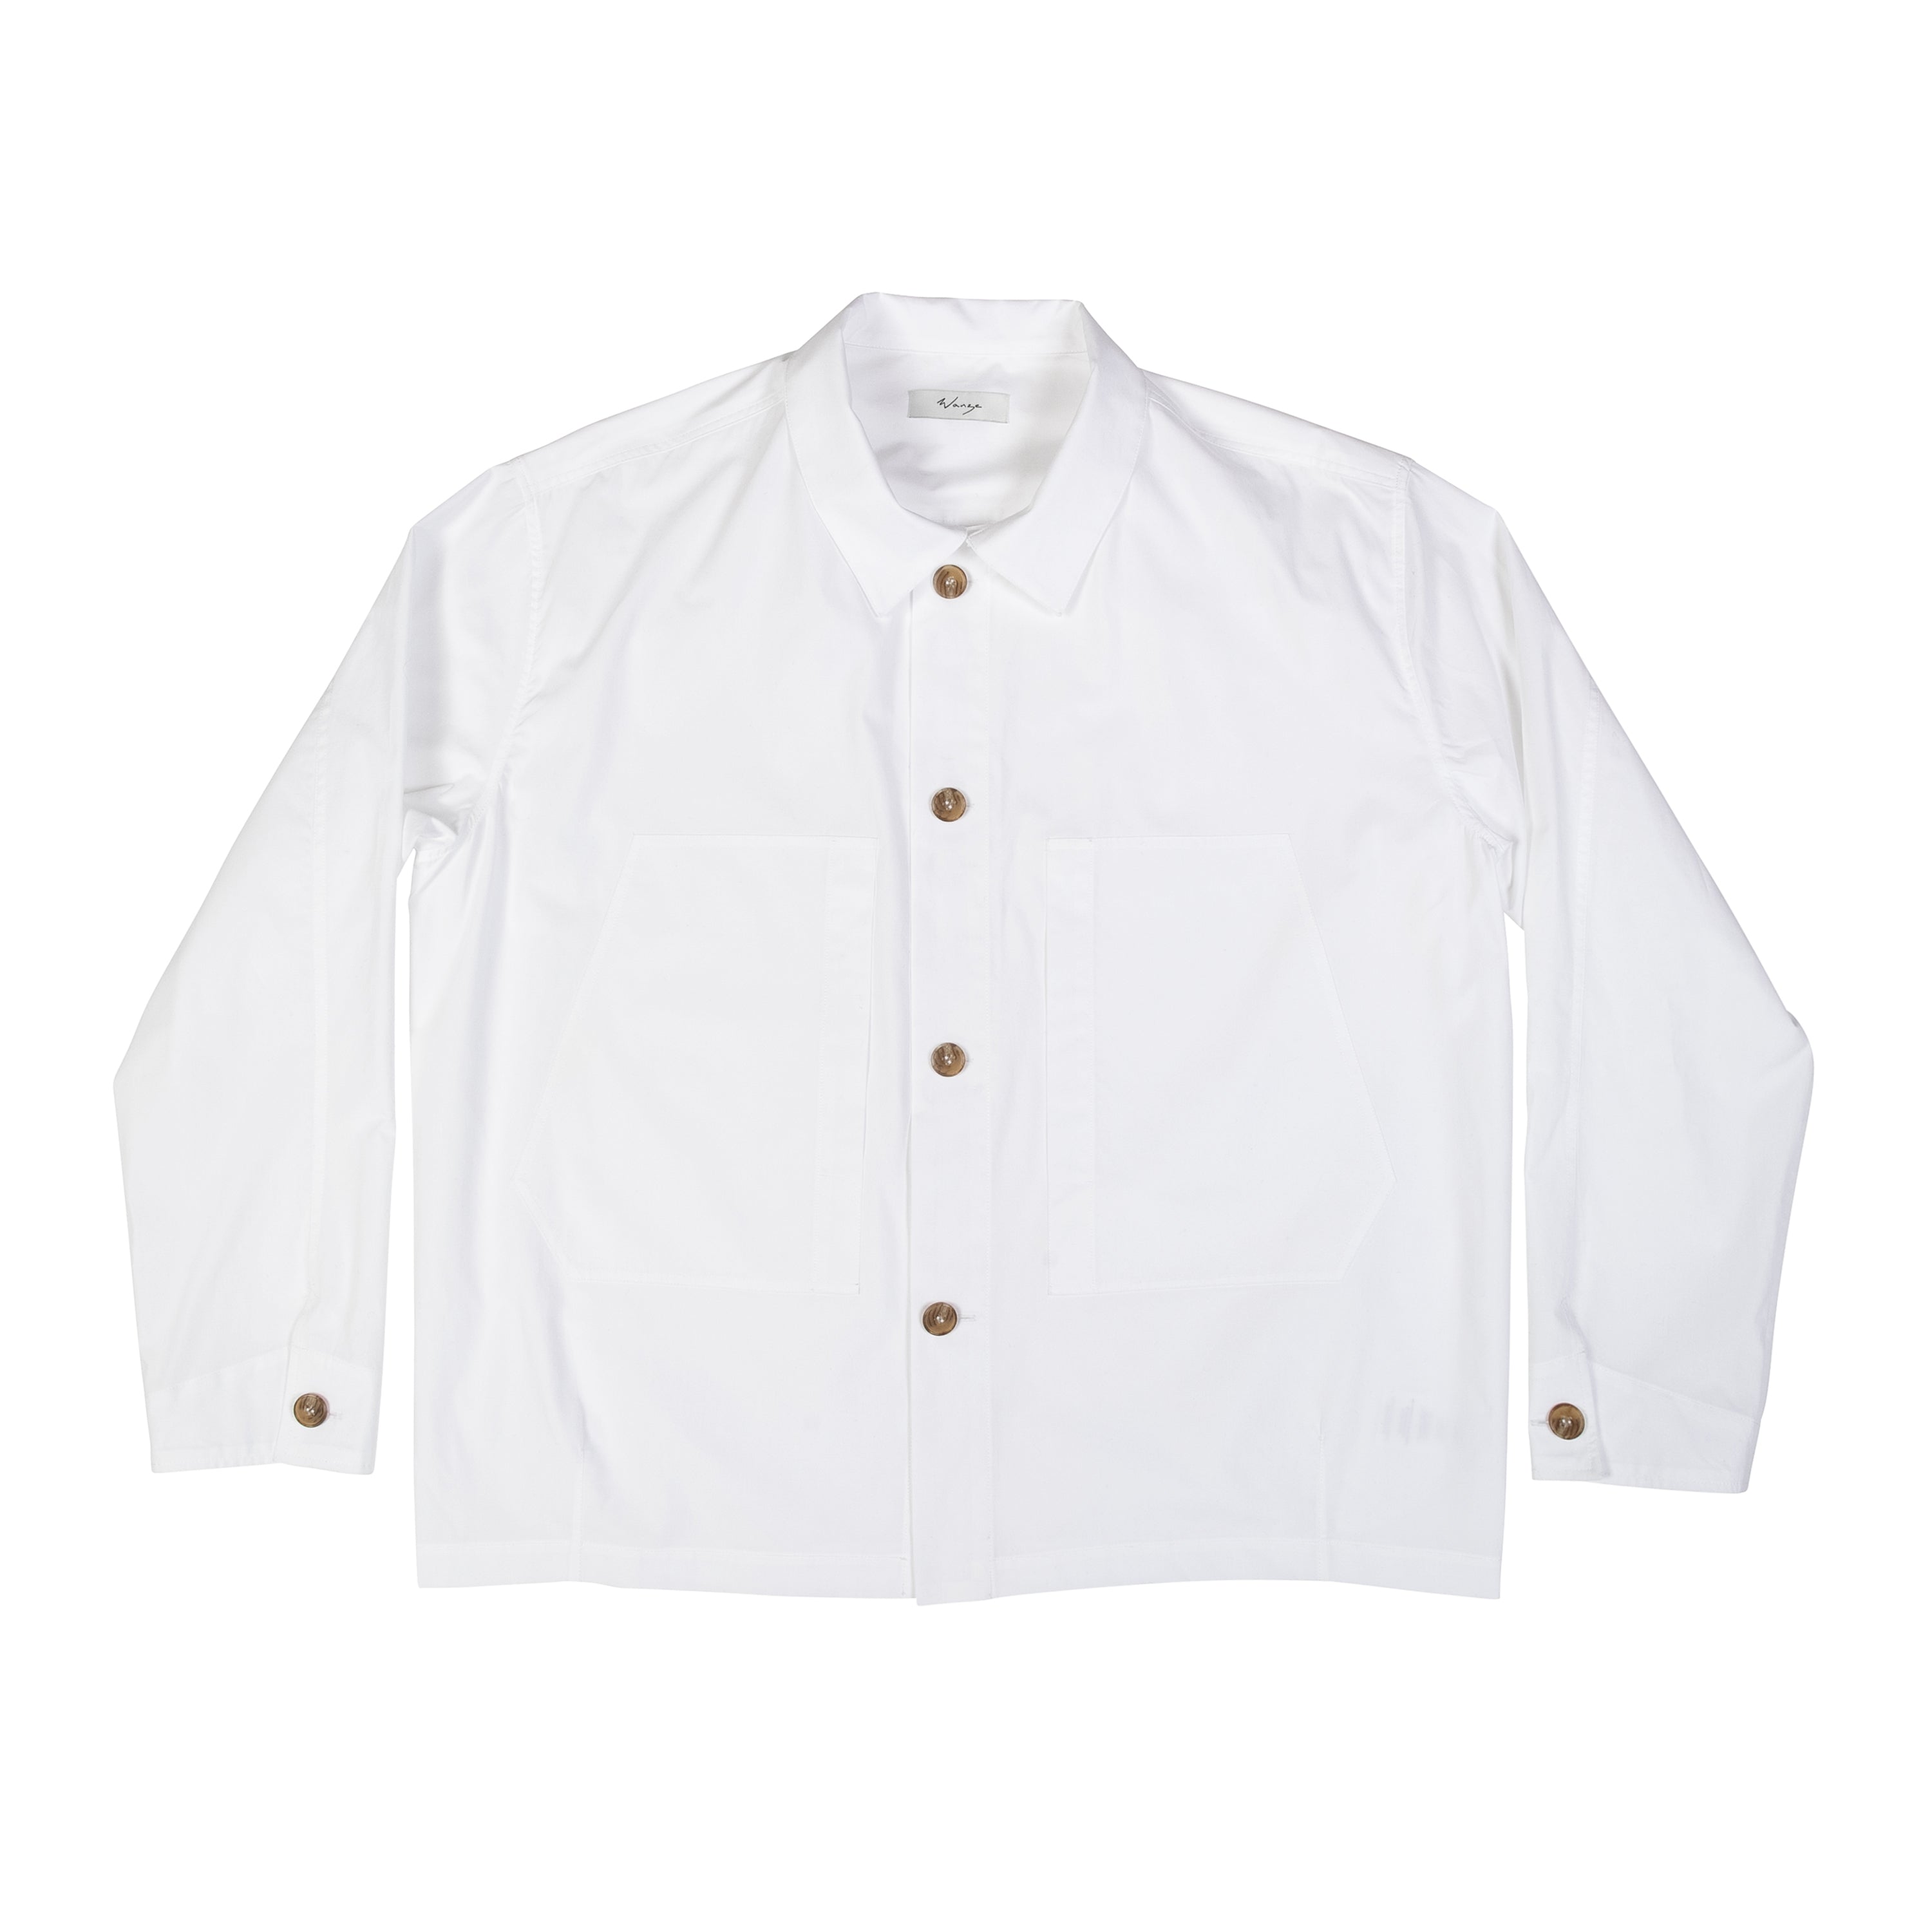 Chore Shirt Egyptian Cotton White - PREORDER